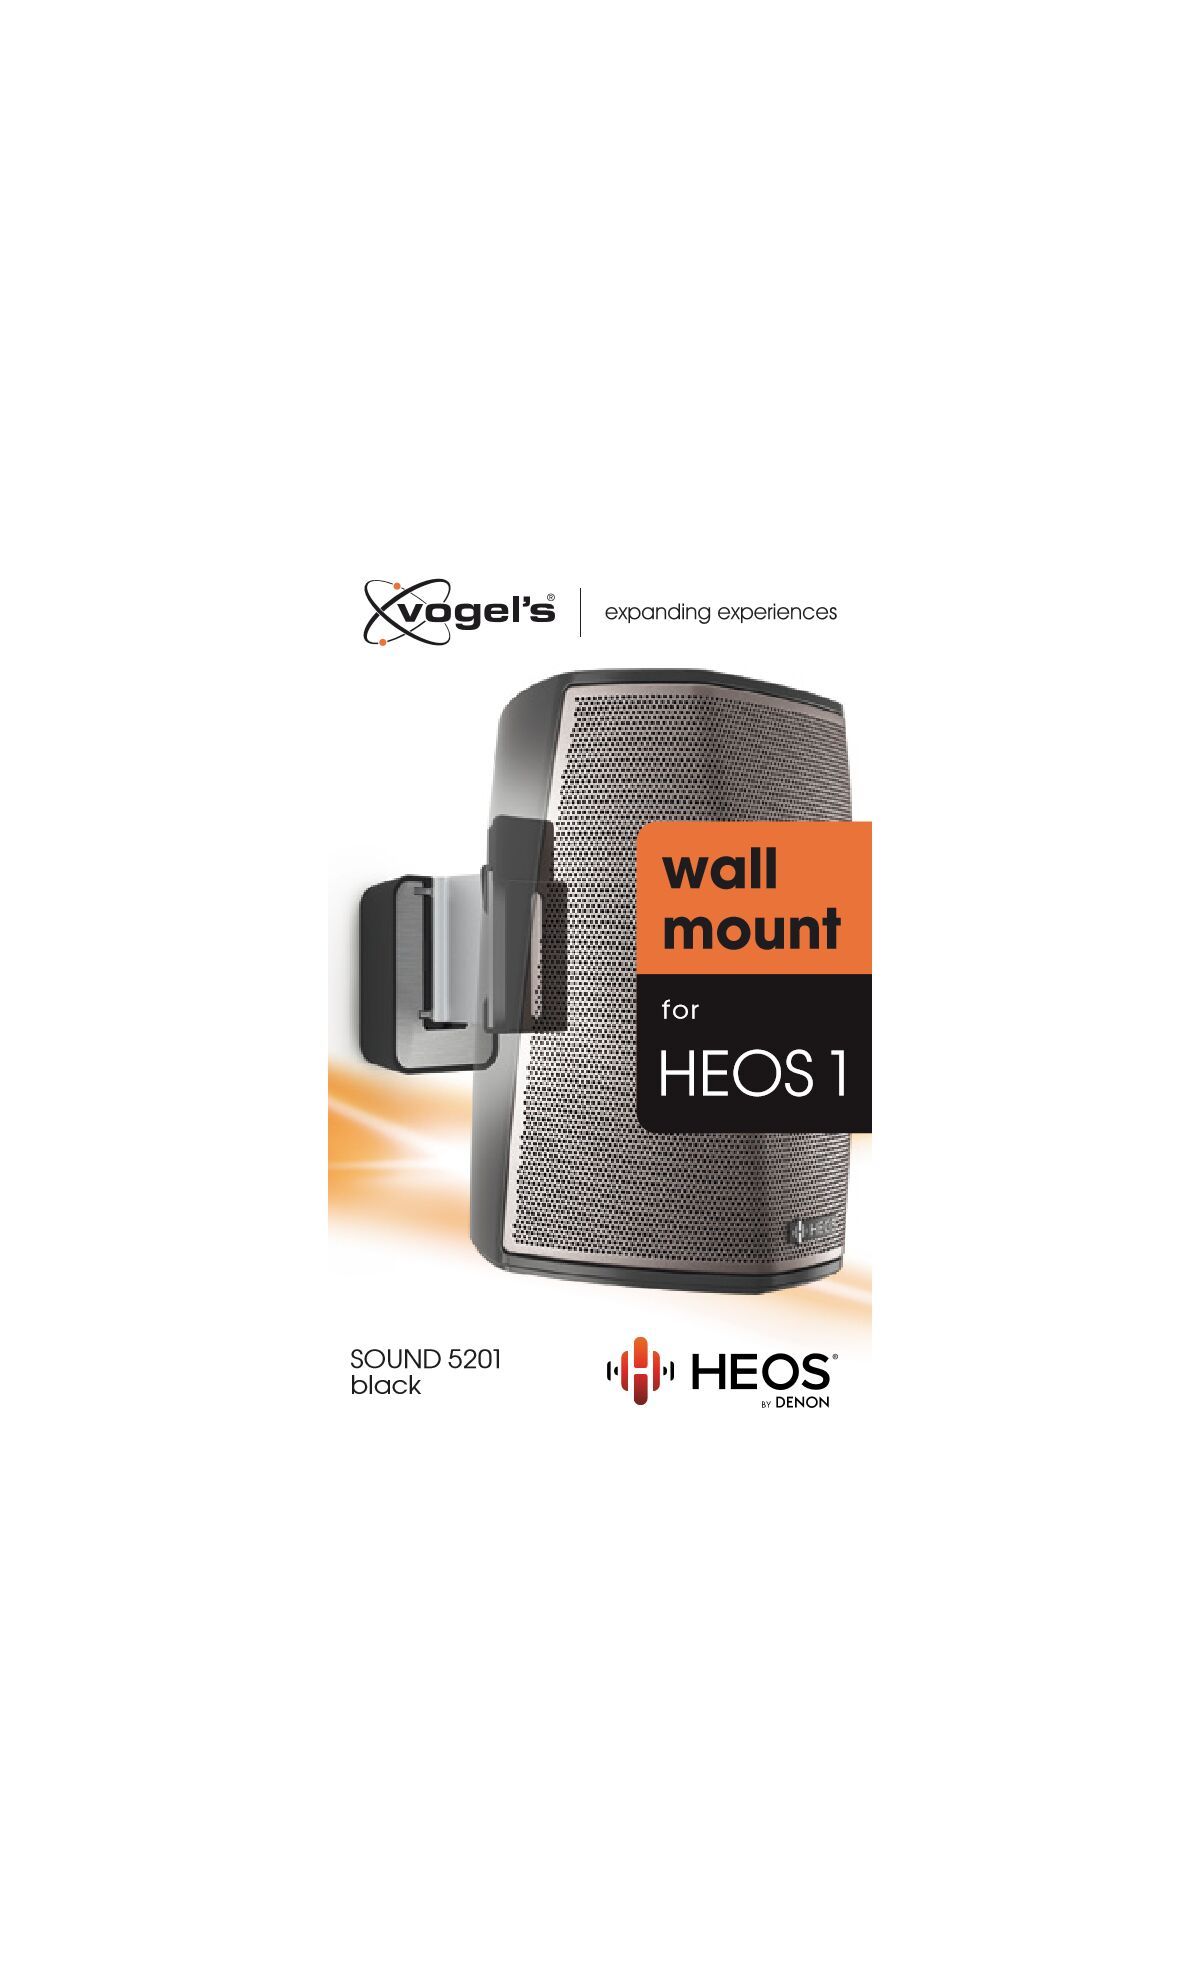 Vogel's SOUND 5201 Lautsprecher Wandhalterung für Denon HEOS 1 (Schwarz) - Packaging front